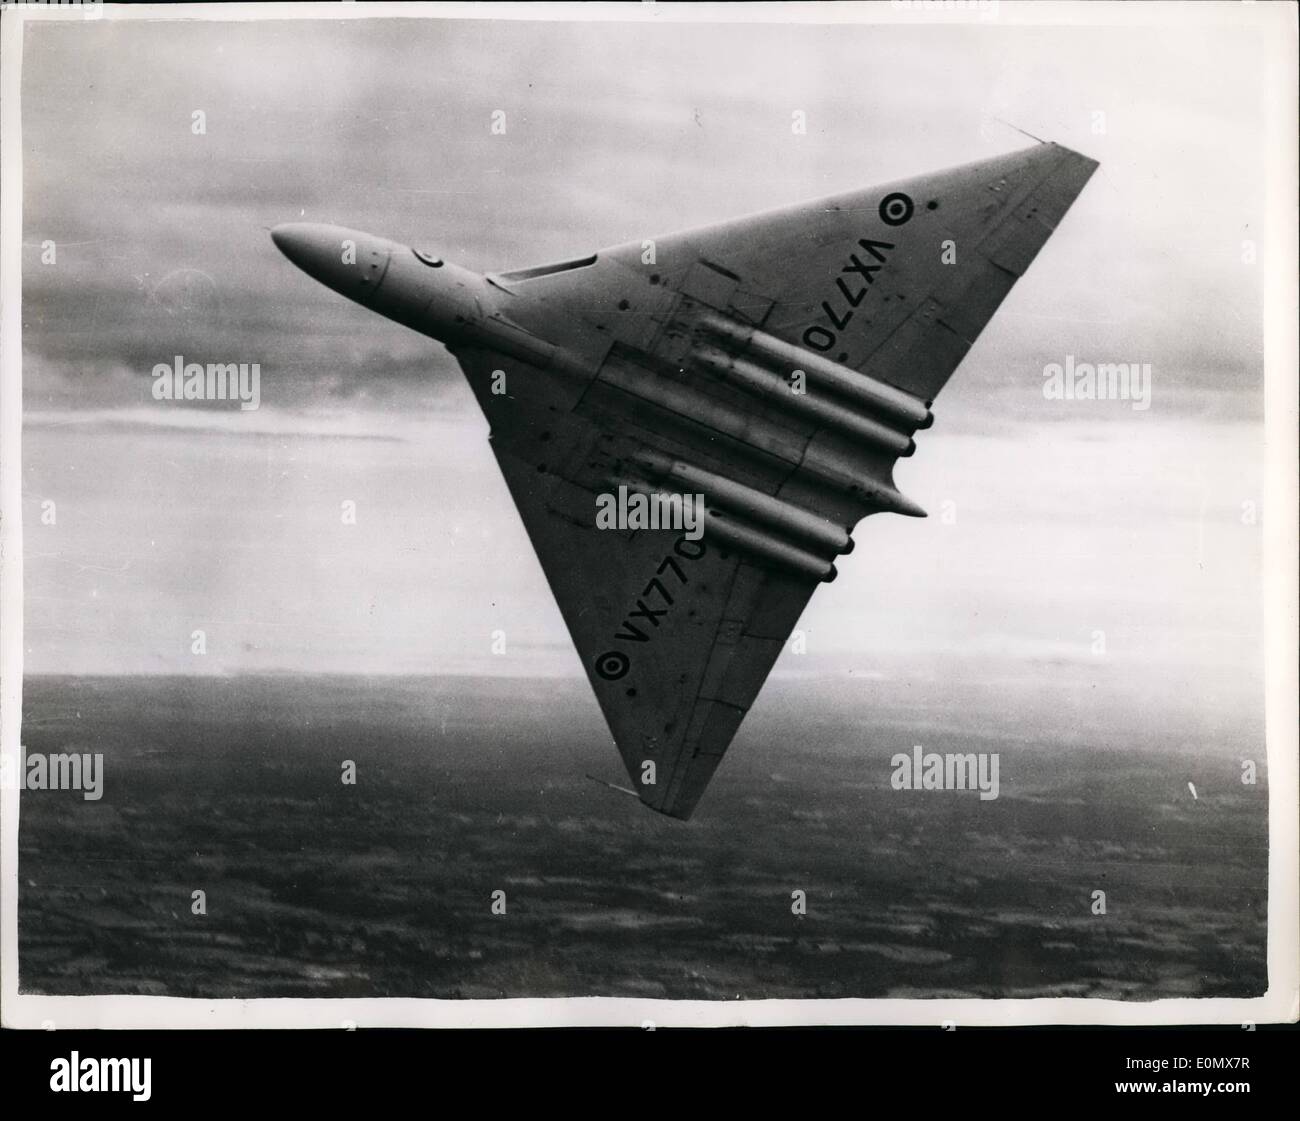 10 octobre 1956 - aéronef Avro Vulcan se plante à l'aéroport de Londres à la fin de 26 000 km d'. La R.A.F quatre Avro Vulcan bomber jet s'est écrasé à l'aéroport de Londres ce matin où elle s'apprêtait à atterrir à la fin de son 26 000 km - trois semaines de voyage en Australie et en Nouvelle-Zélande. Elle est pensée pour avoir frappé un objet sur la piste d'atterrissage. La photo montre la vue de l'Avro Vulcan bomber jet. Banque D'Images